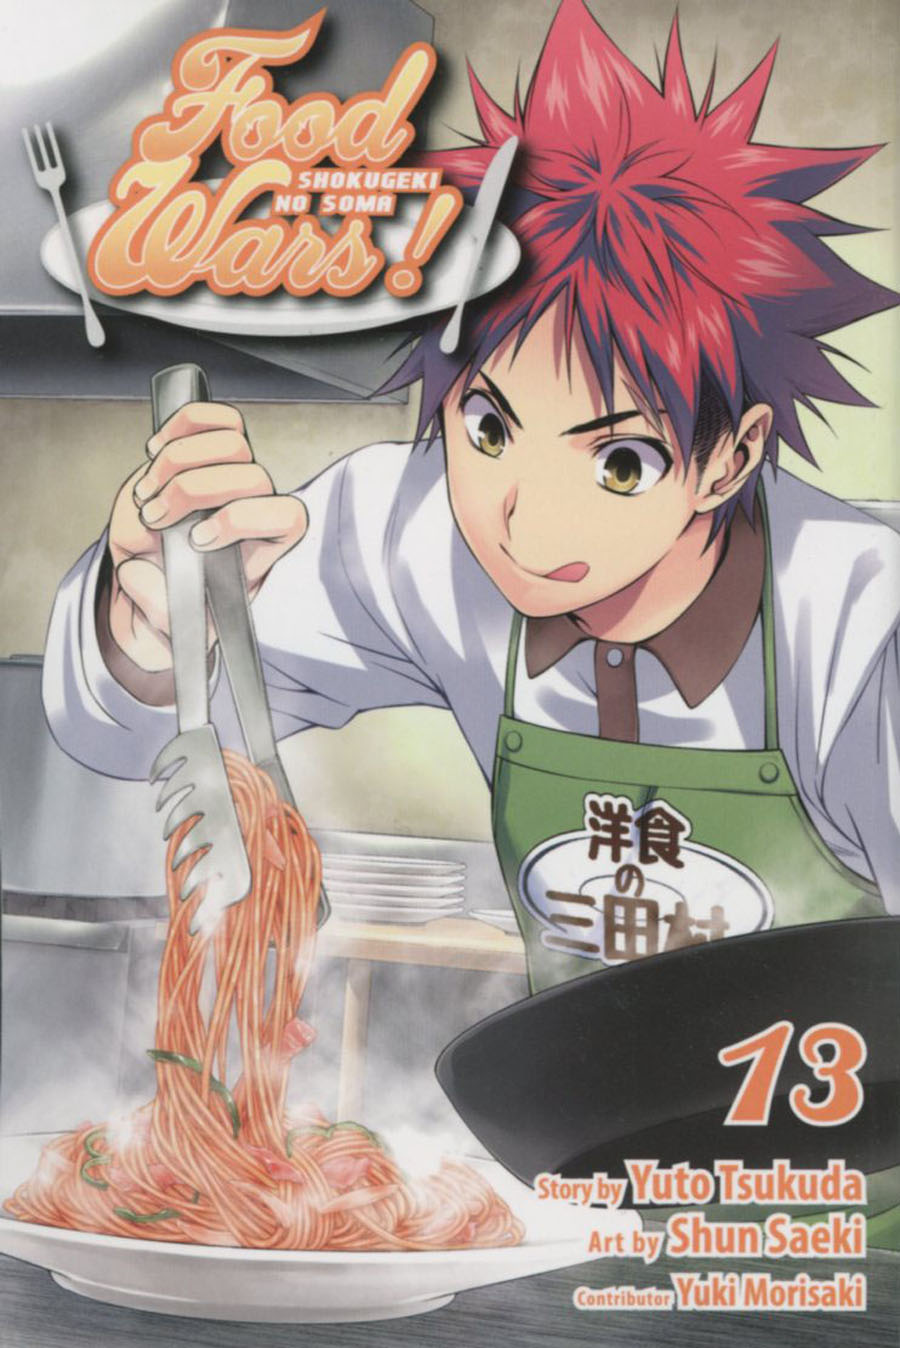 Food Wars Shokugeki No Soma Vol 13 TP